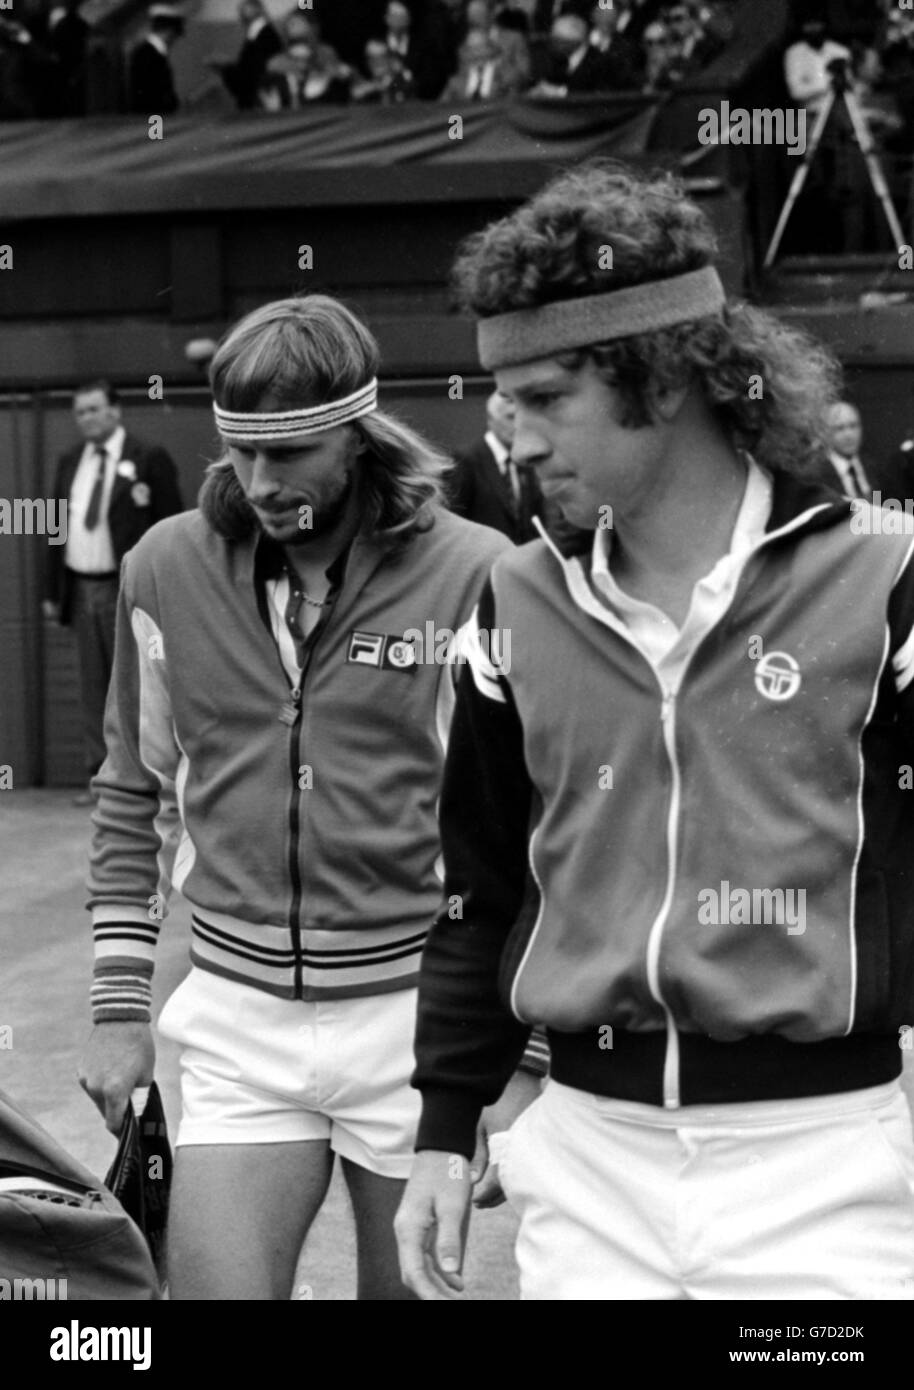 Titelverteidiger Bjorn Borg (links) aus Schweden und der Amerikaner John McEnroe gehen zum Center Court in Wimbledon, um das Finale der Männer im Einzel zu besuchen. Stockfoto